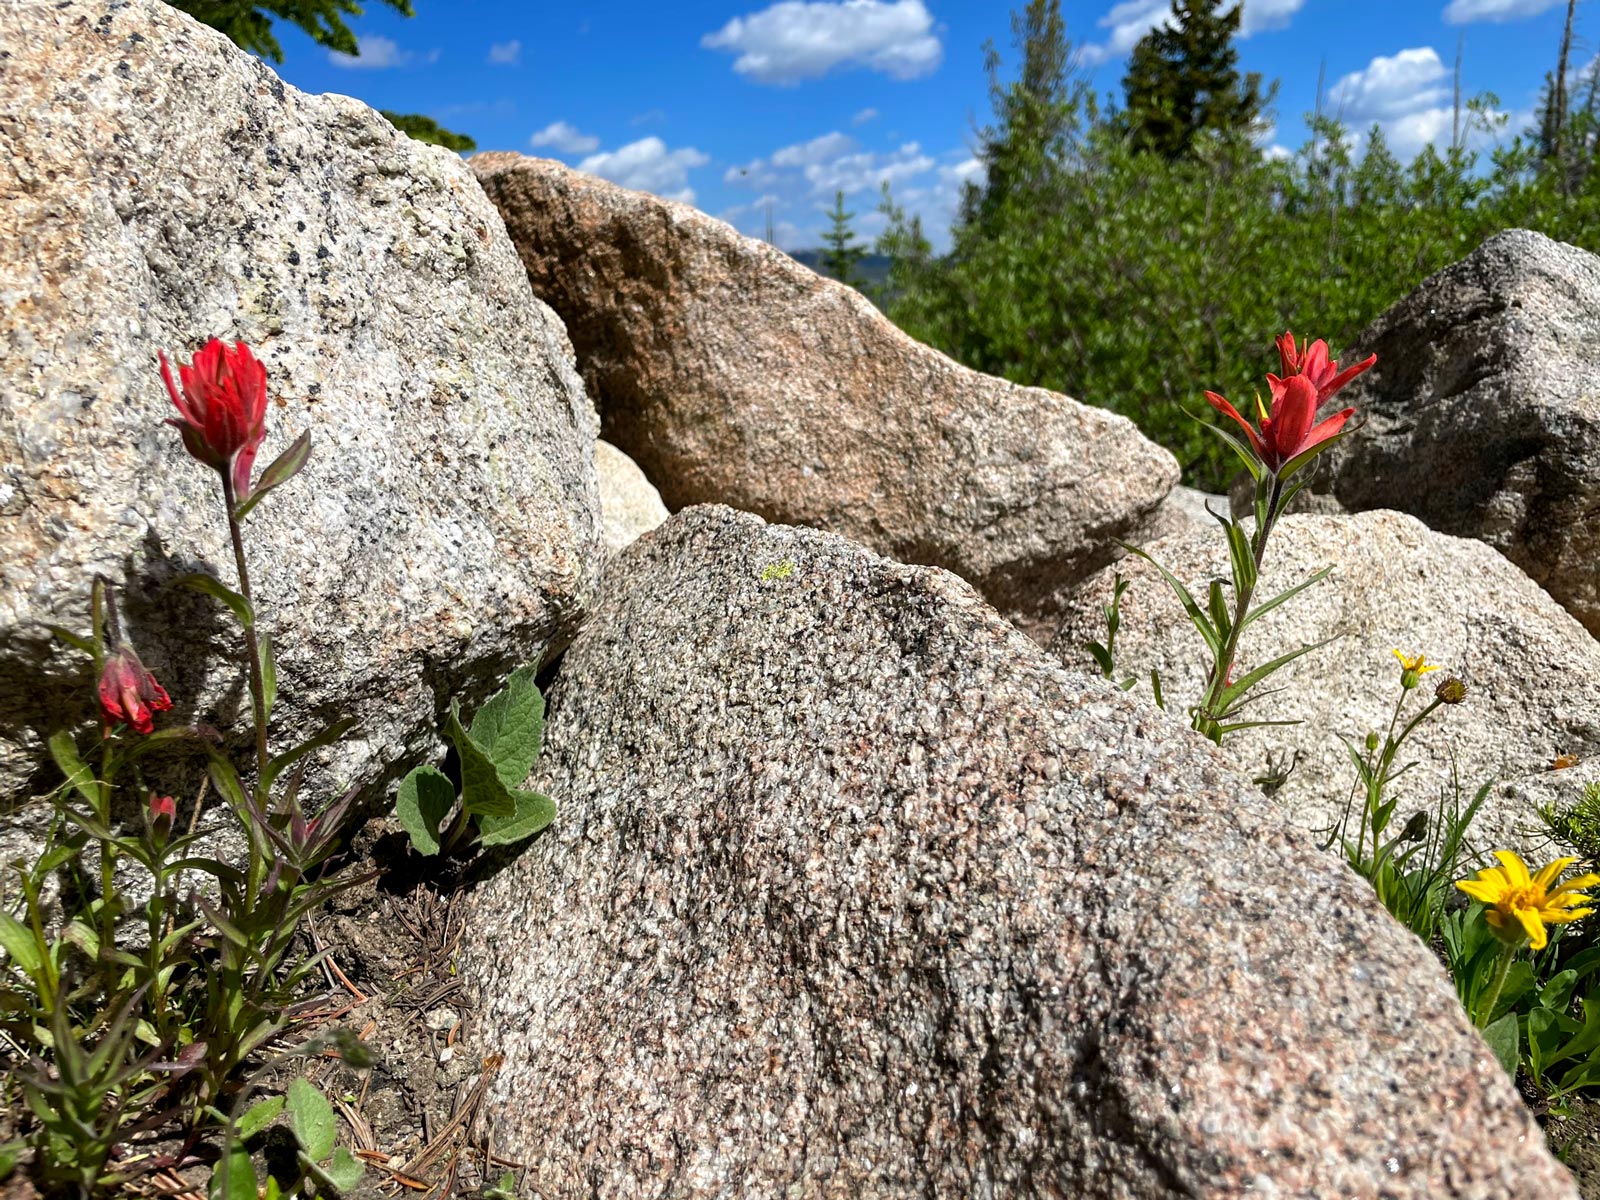 Red flowers, Indian Paintbrush, grow between granite rocks